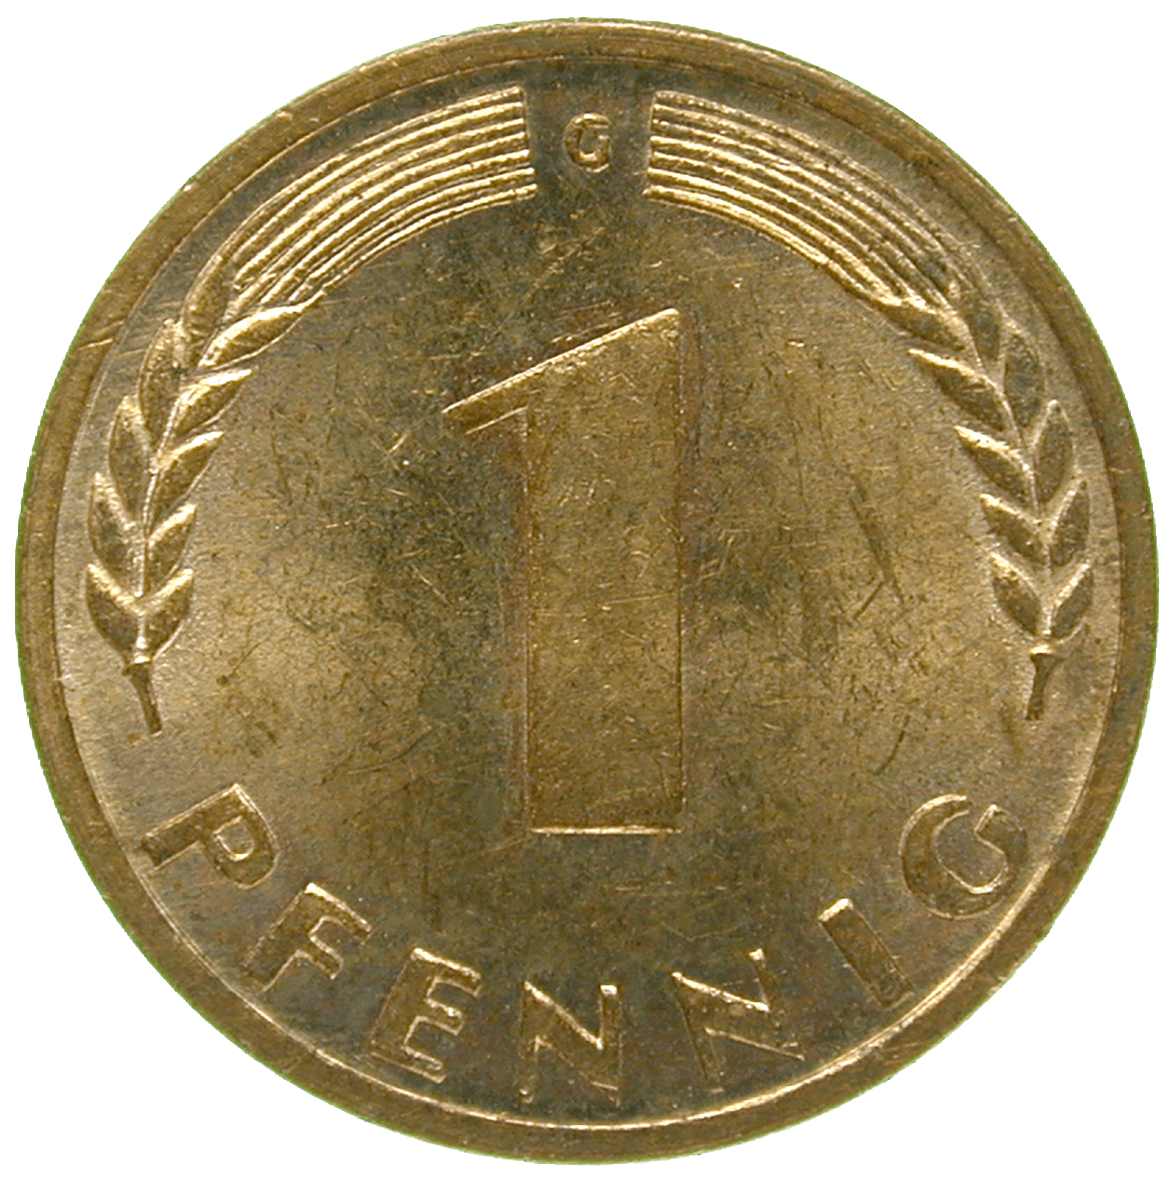 Bundesrepublik Deutschland, 1 Pfennig 1950 (reverse)